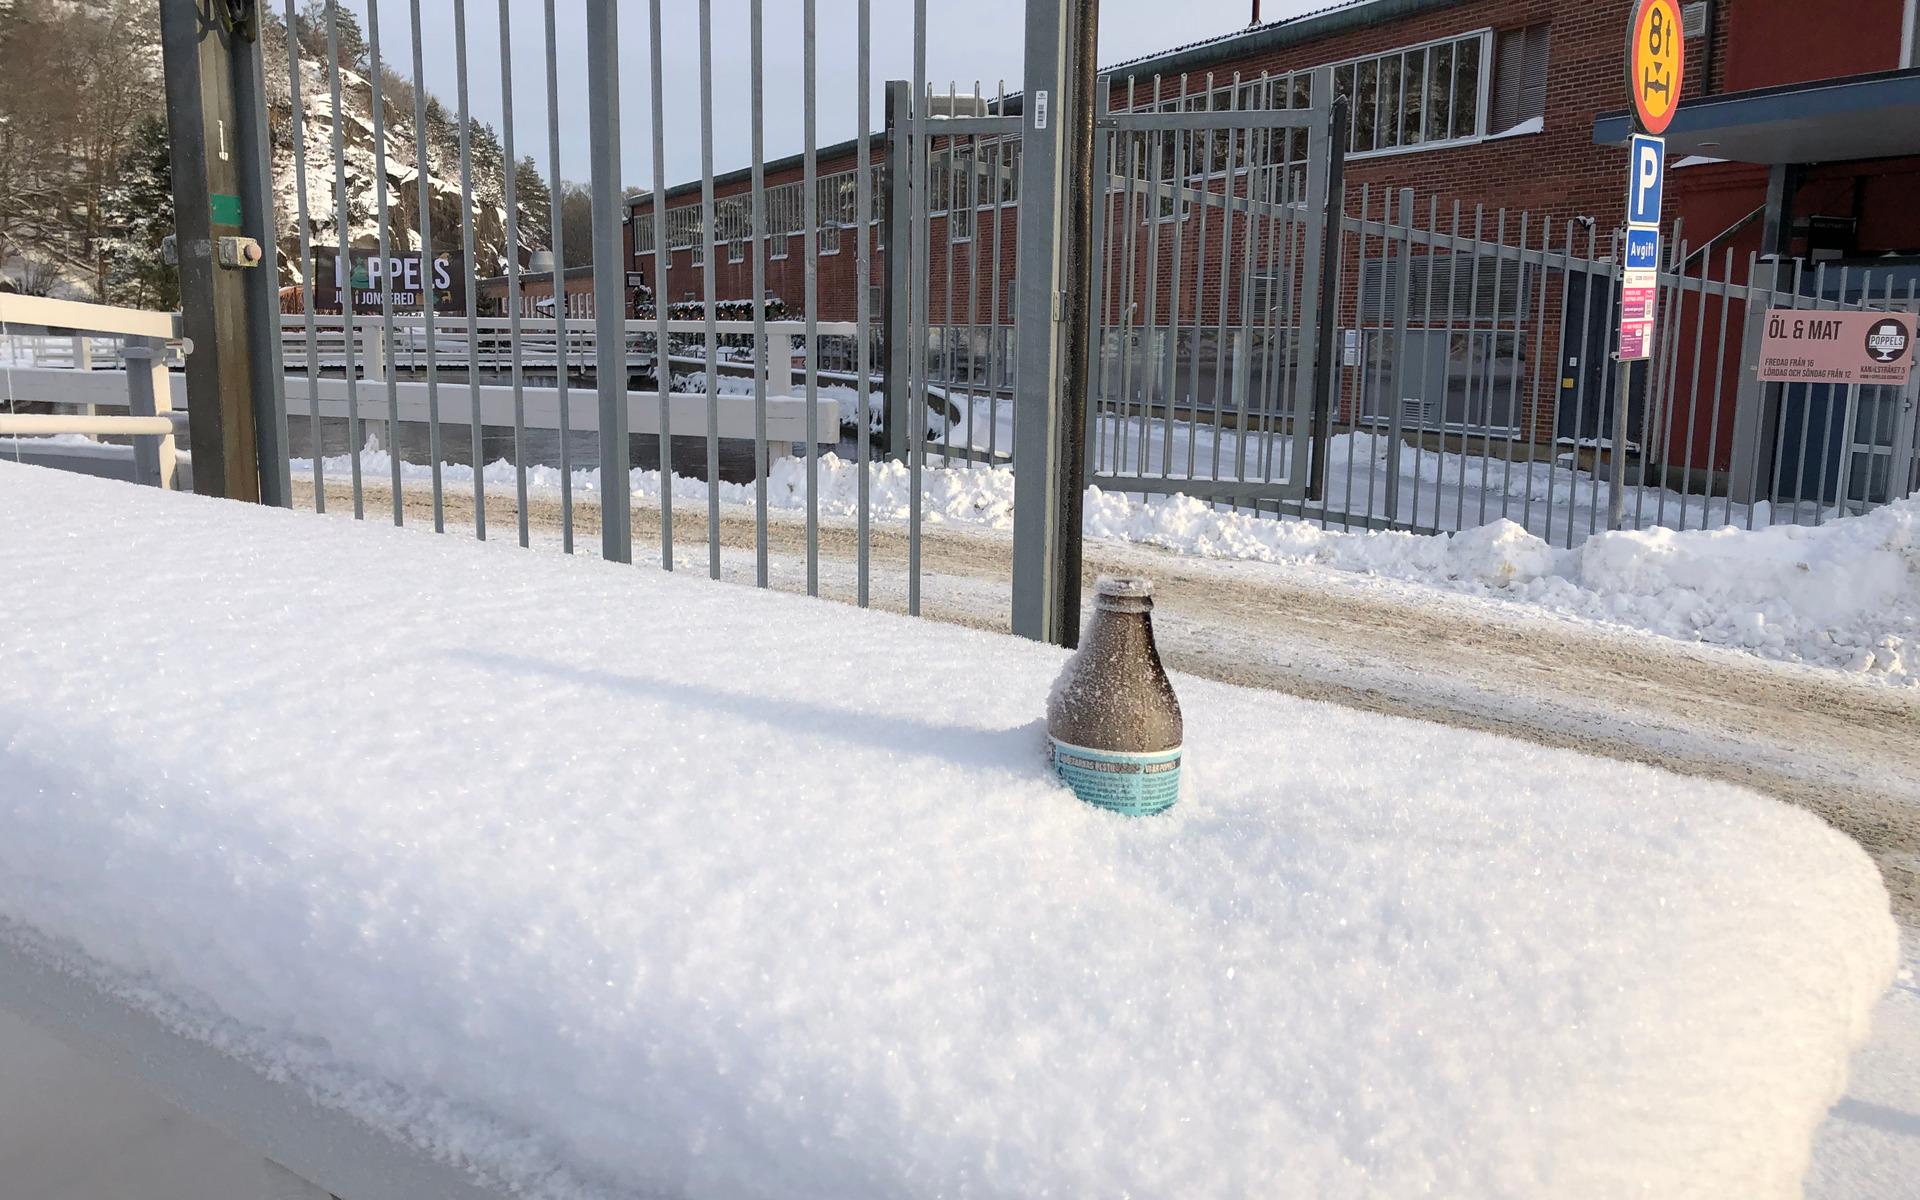 Någon har kylt en öl i snön. Men antagligen glömt den. Passande nog ligger bryggeriet i bakgrunden.